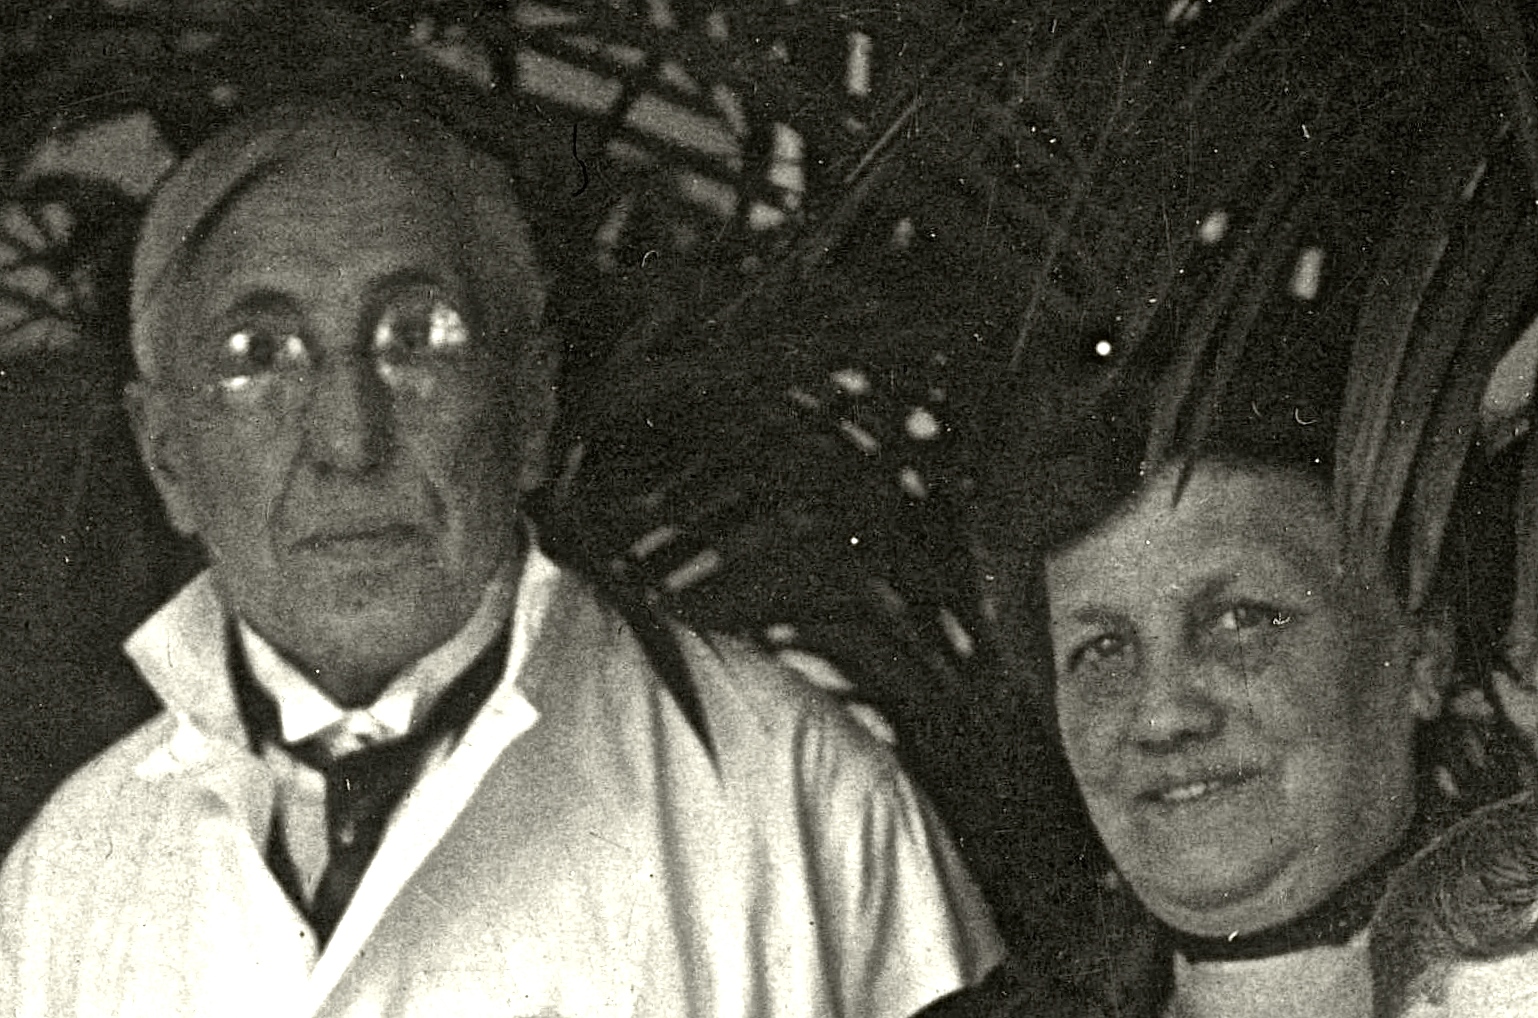 Derk Willem Ekker en Regina Rijshouwer in de polikliniek van het  Westeinde ziekenhuis 21 mei 1927. Zij waren toen respectievelijk 65 en 58 jaar oud